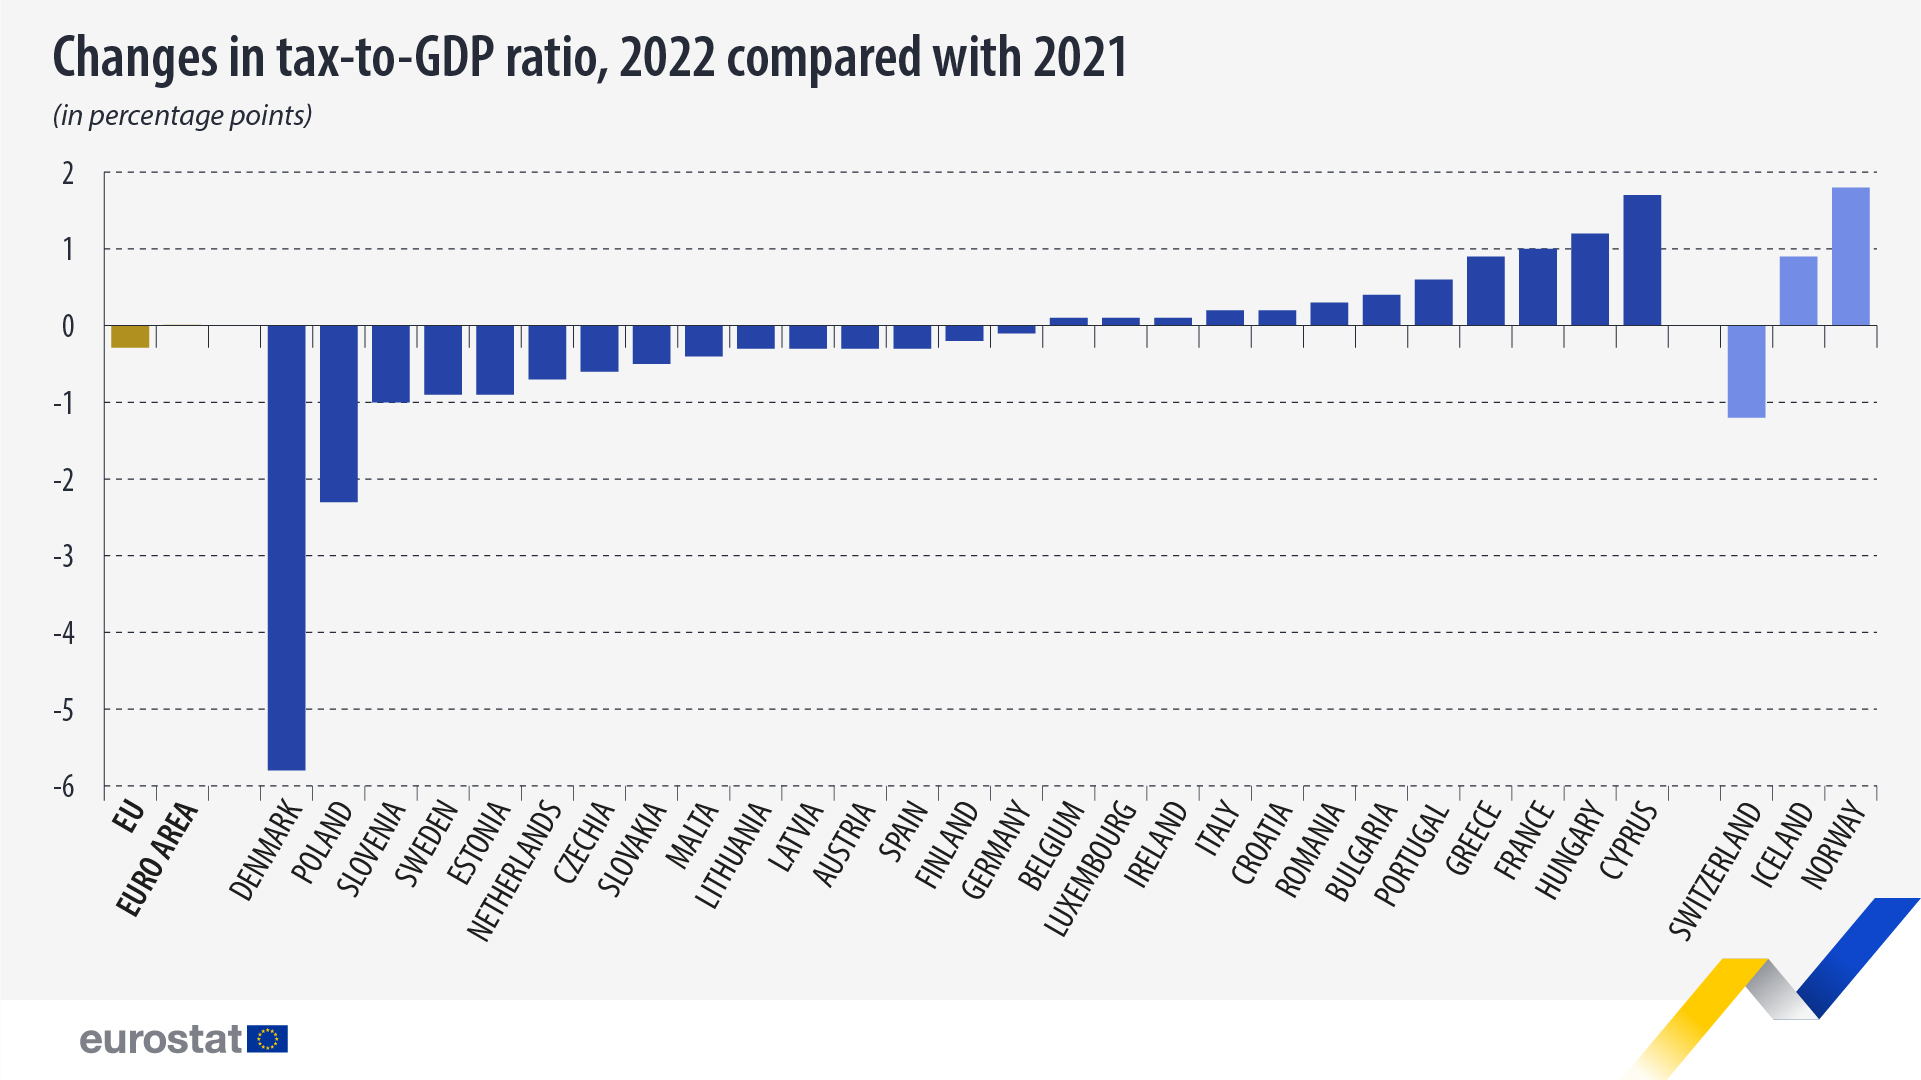 Balkendiagramm: Veränderungen der Steuerquote im Verhältnis zum BIP, 2022 im Vergleich zu 2021 (in Prozentpunkten)